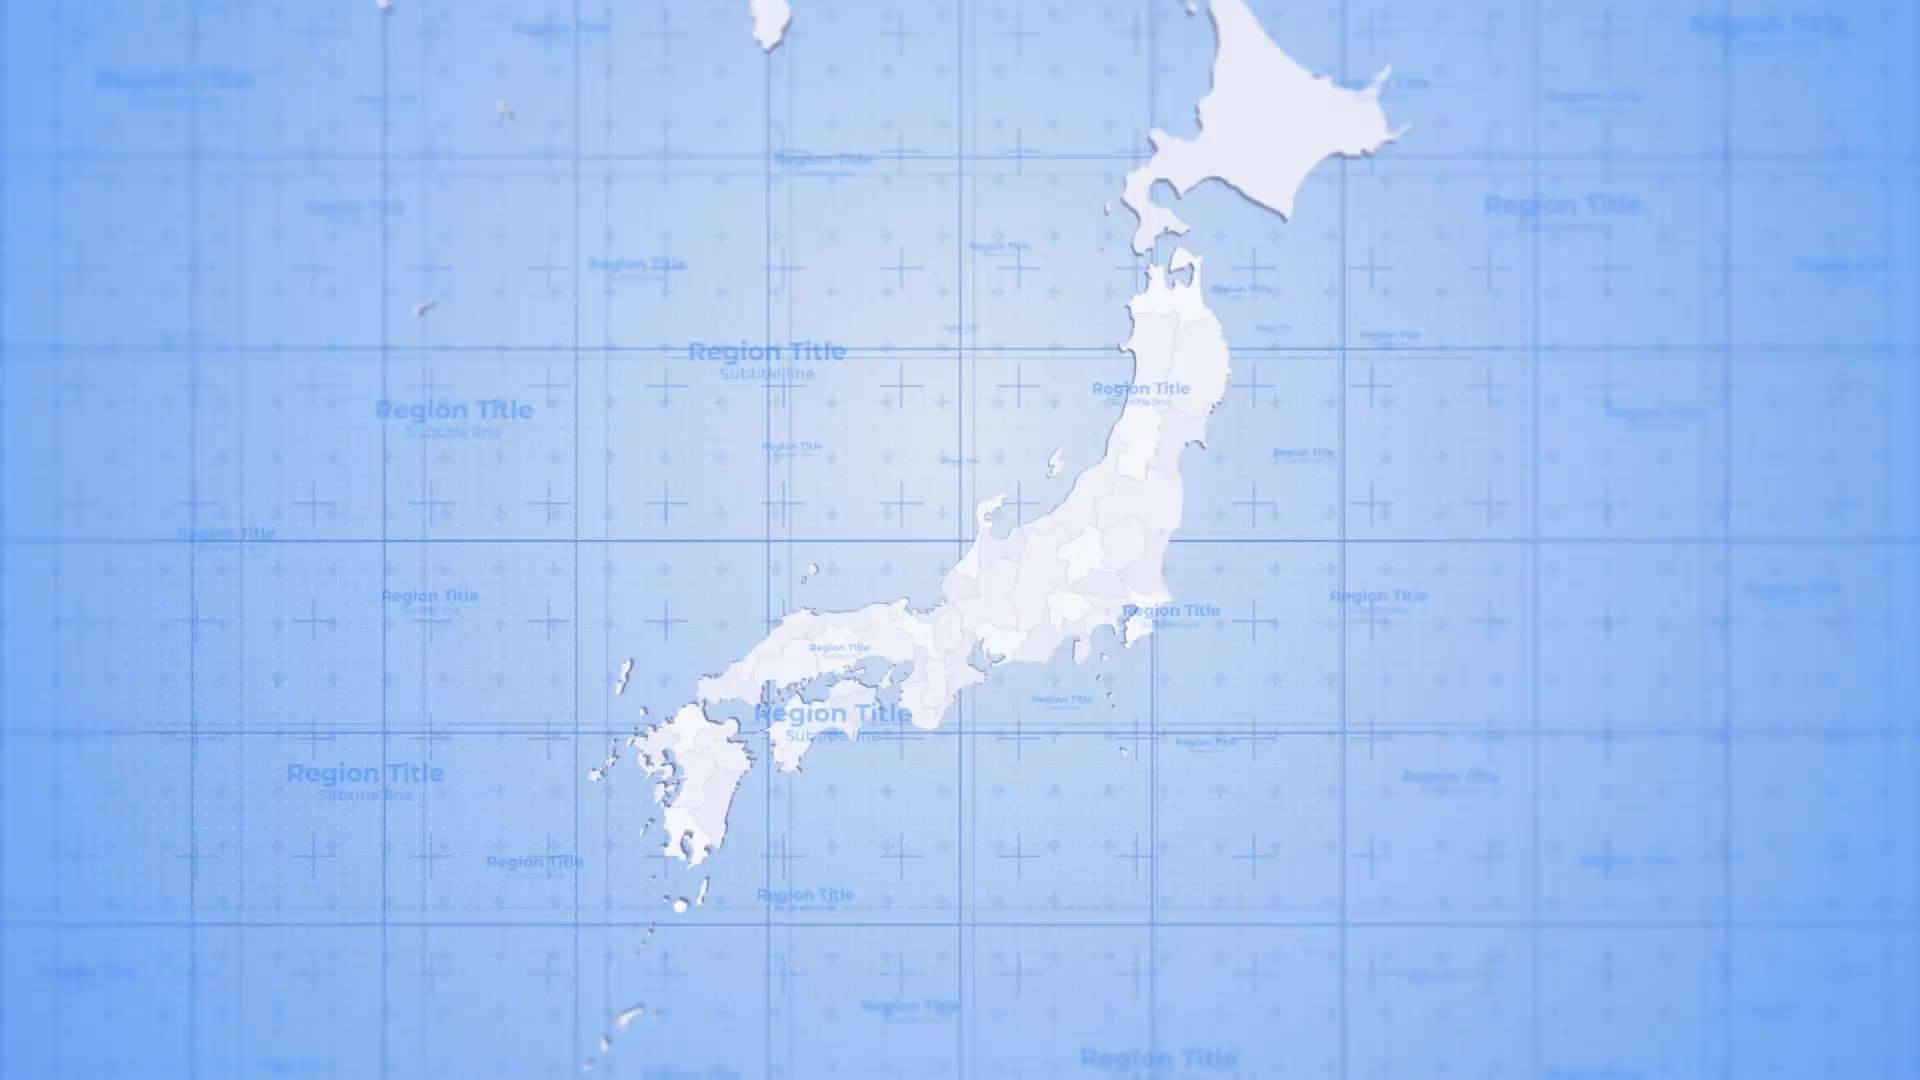 AE模板|日本旅游地图国际新闻路线标记工具包动态动画展示